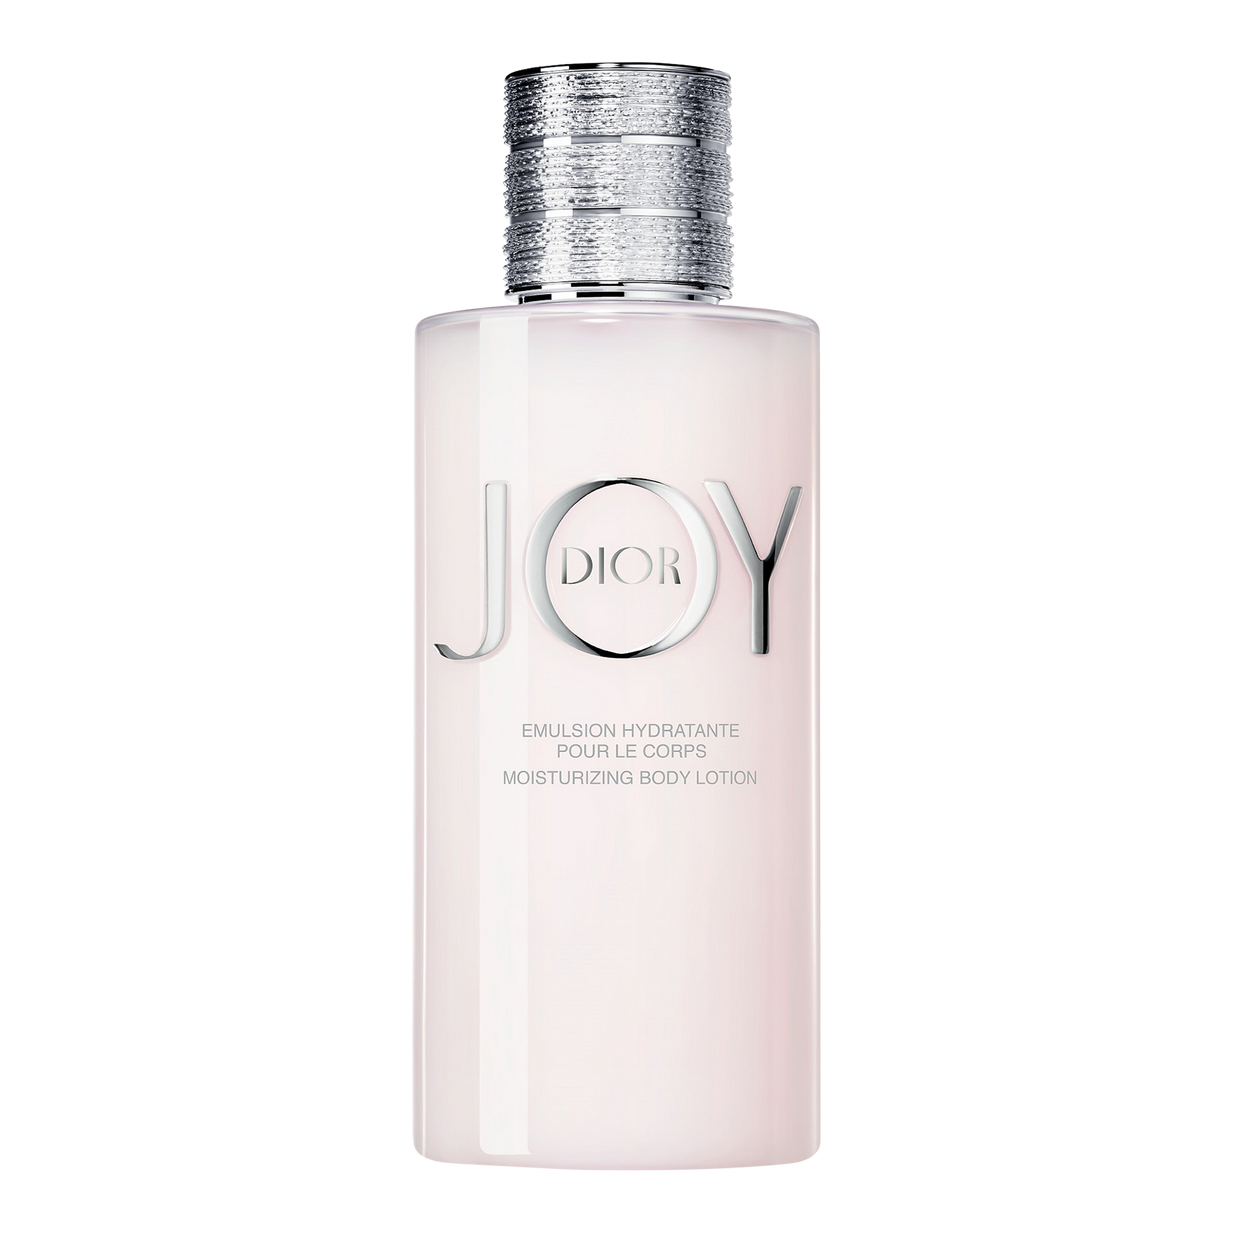 JOY By Dior Moisturizing Body Lotion - Dior